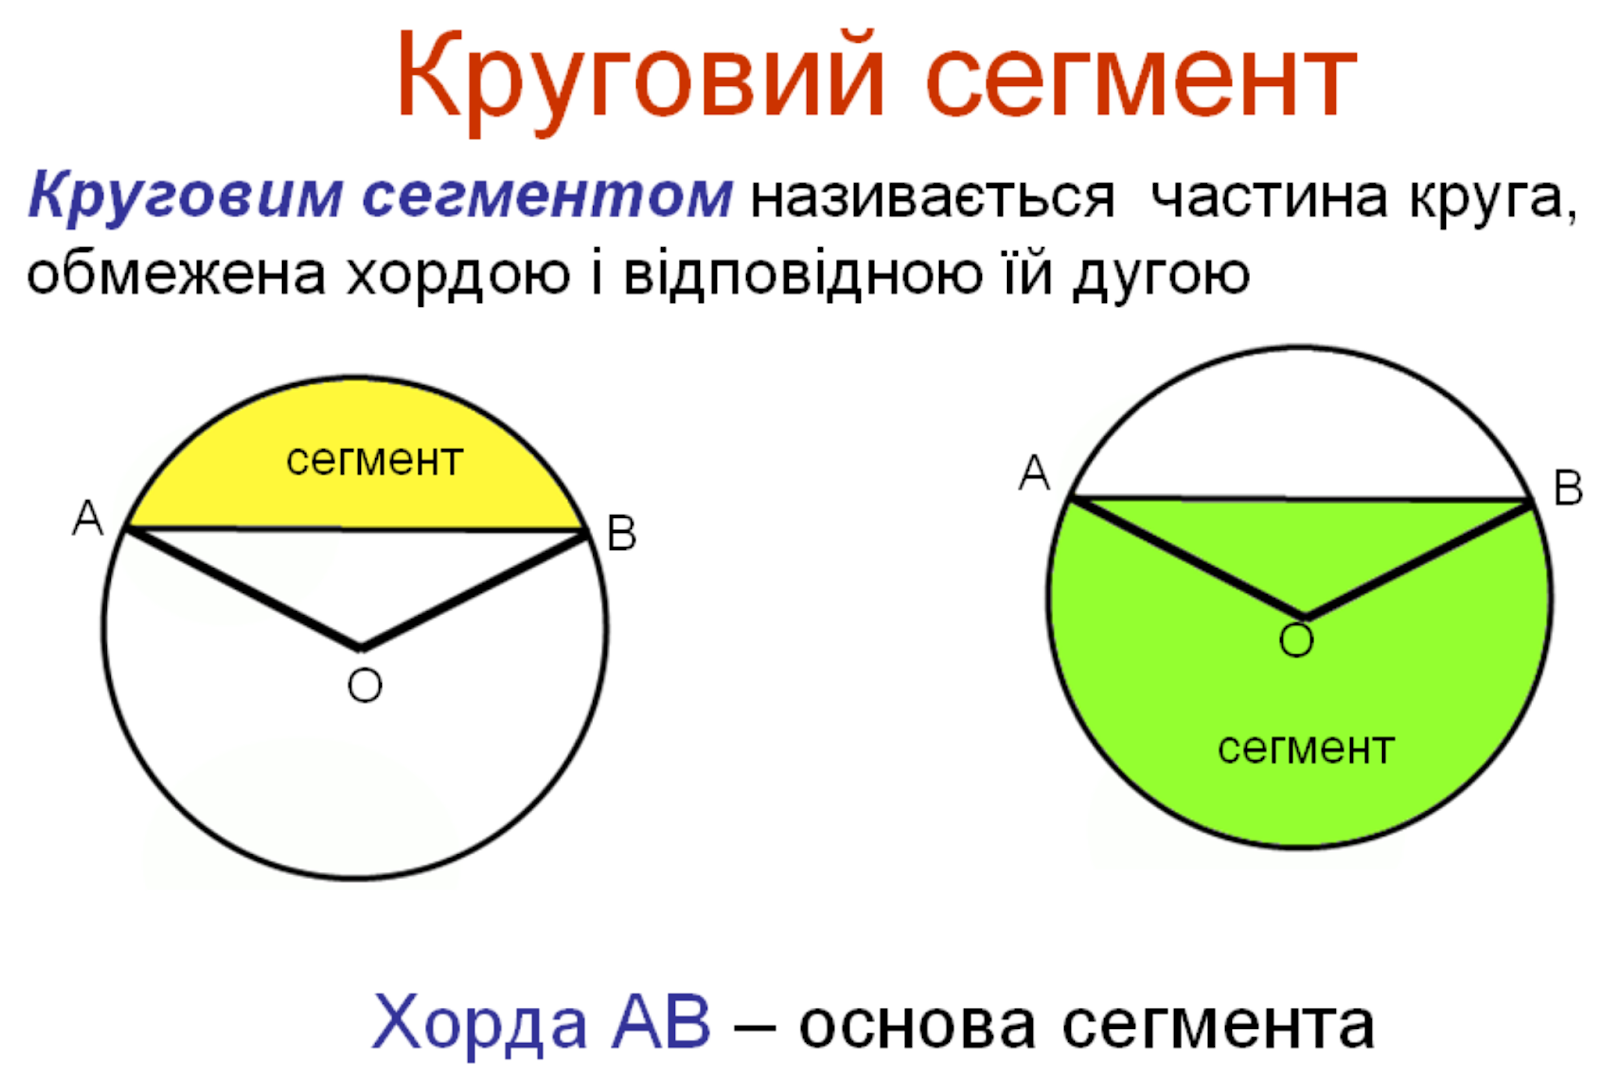 Урок площадь круга сектора сегмента